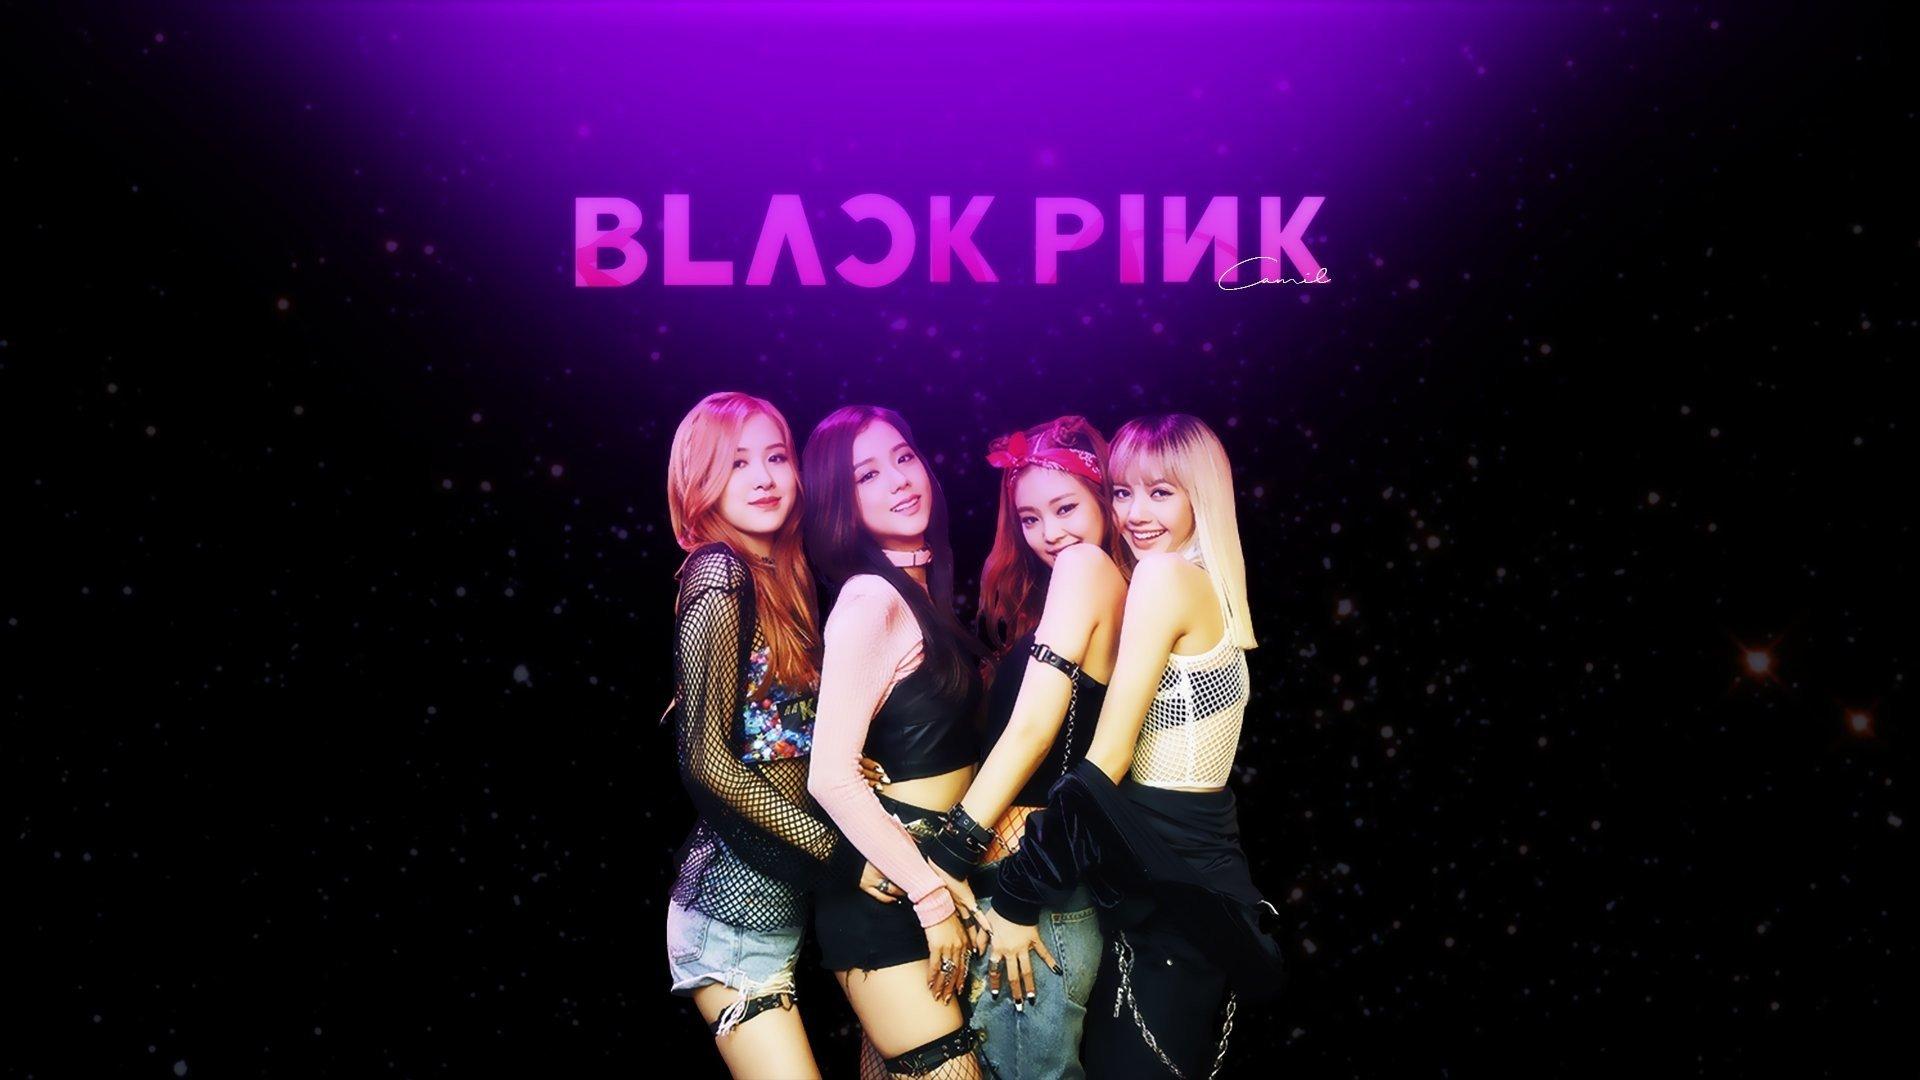 Khám phá hình nền Blackpink đầy phong cách và sự quyến rũ trên điện thoại của bạn ngay bây giờ! Họ là nhóm nhạc hàng đầu của Hàn Quốc và sẵn sàng để làm cho màn hình của bạn trở nên hấp dẫn hơn bao giờ hết.